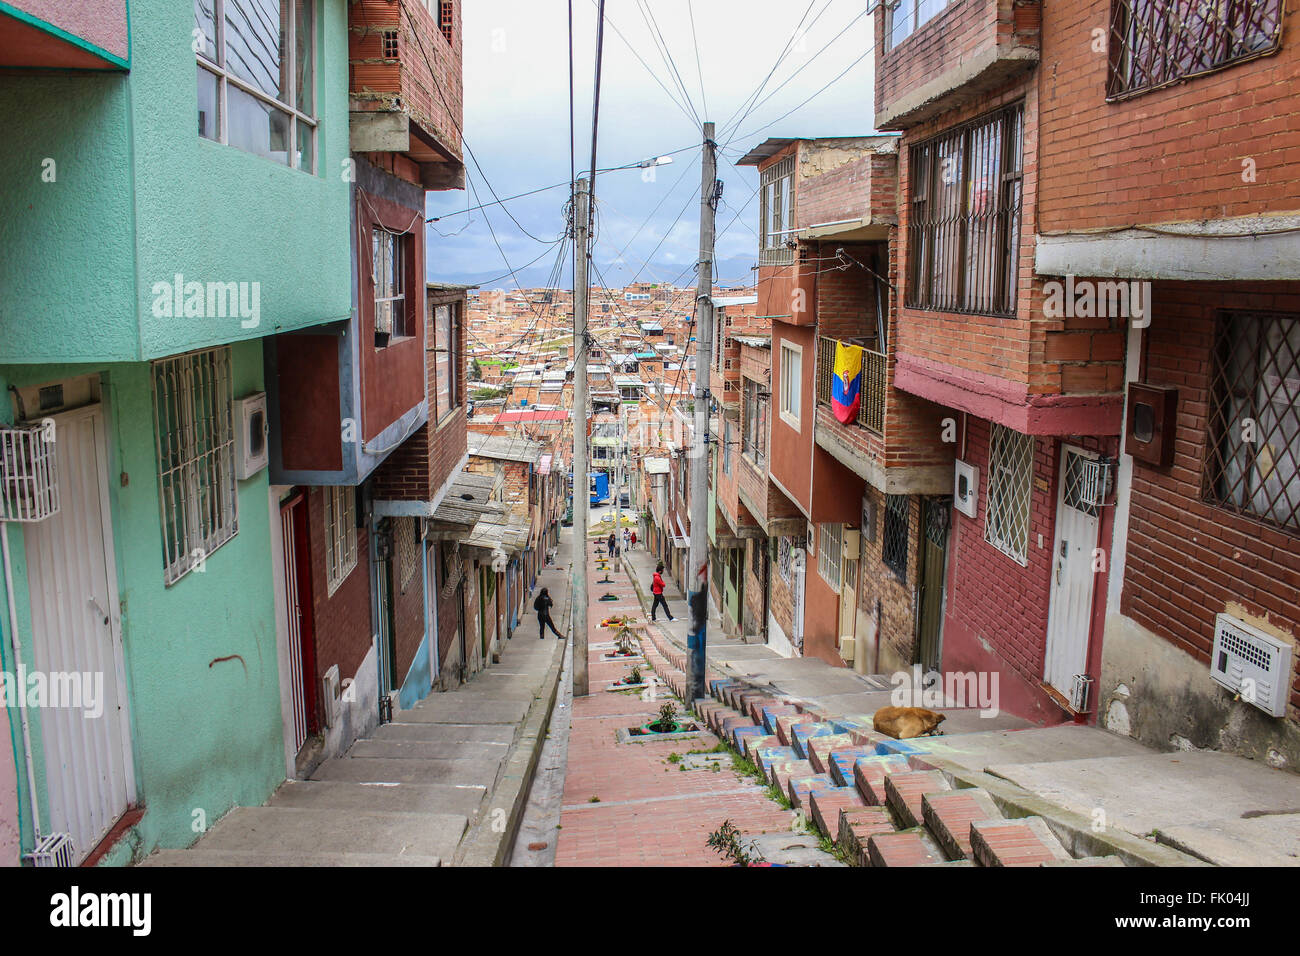 Questa è una delle più importanti e quartieri popolari di Bogotá, Rafael Uribe Foto Stock